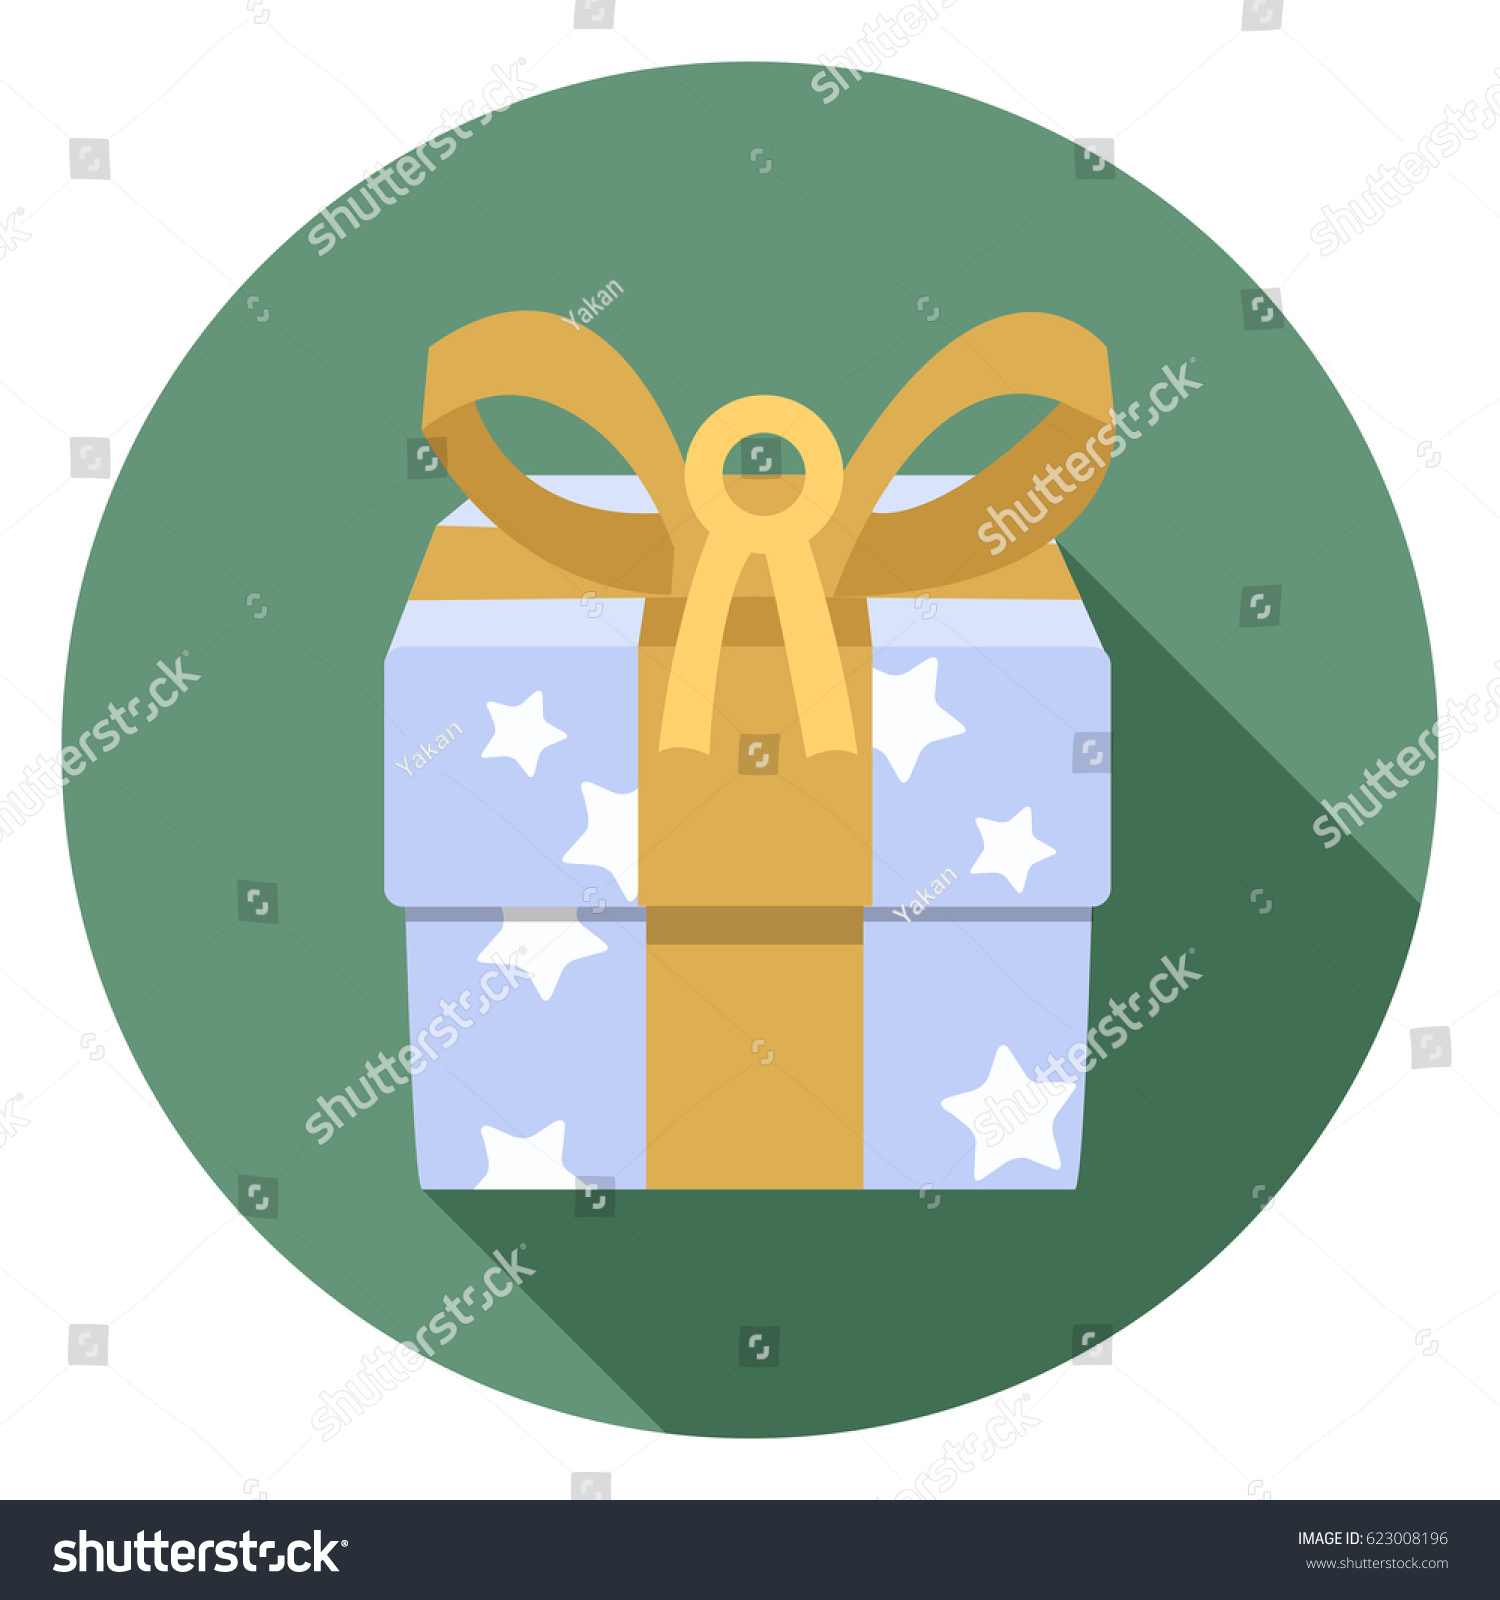 gift box icon #623008196